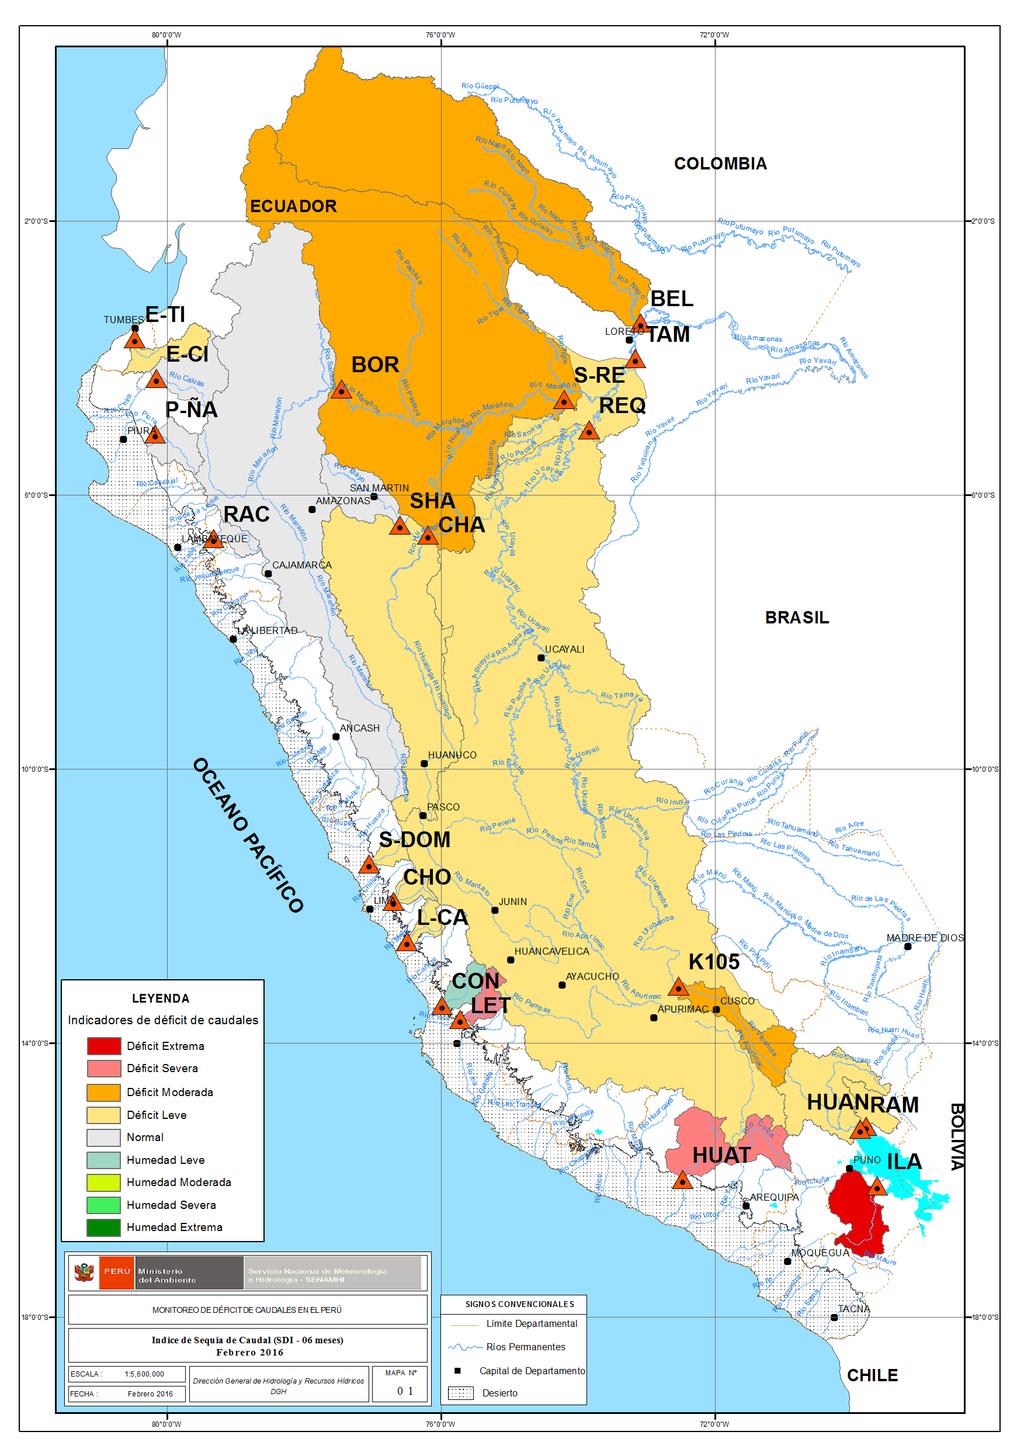 ÍNDICE DE SEQUÍA DE CAUDAL (SDI): En las cuencas de los ríos Tumbes en el norte, Chancay-Huaral, Rímac Mala de la zona central y sur, pertenecientes a la región hidrográfica del Pacífico, se